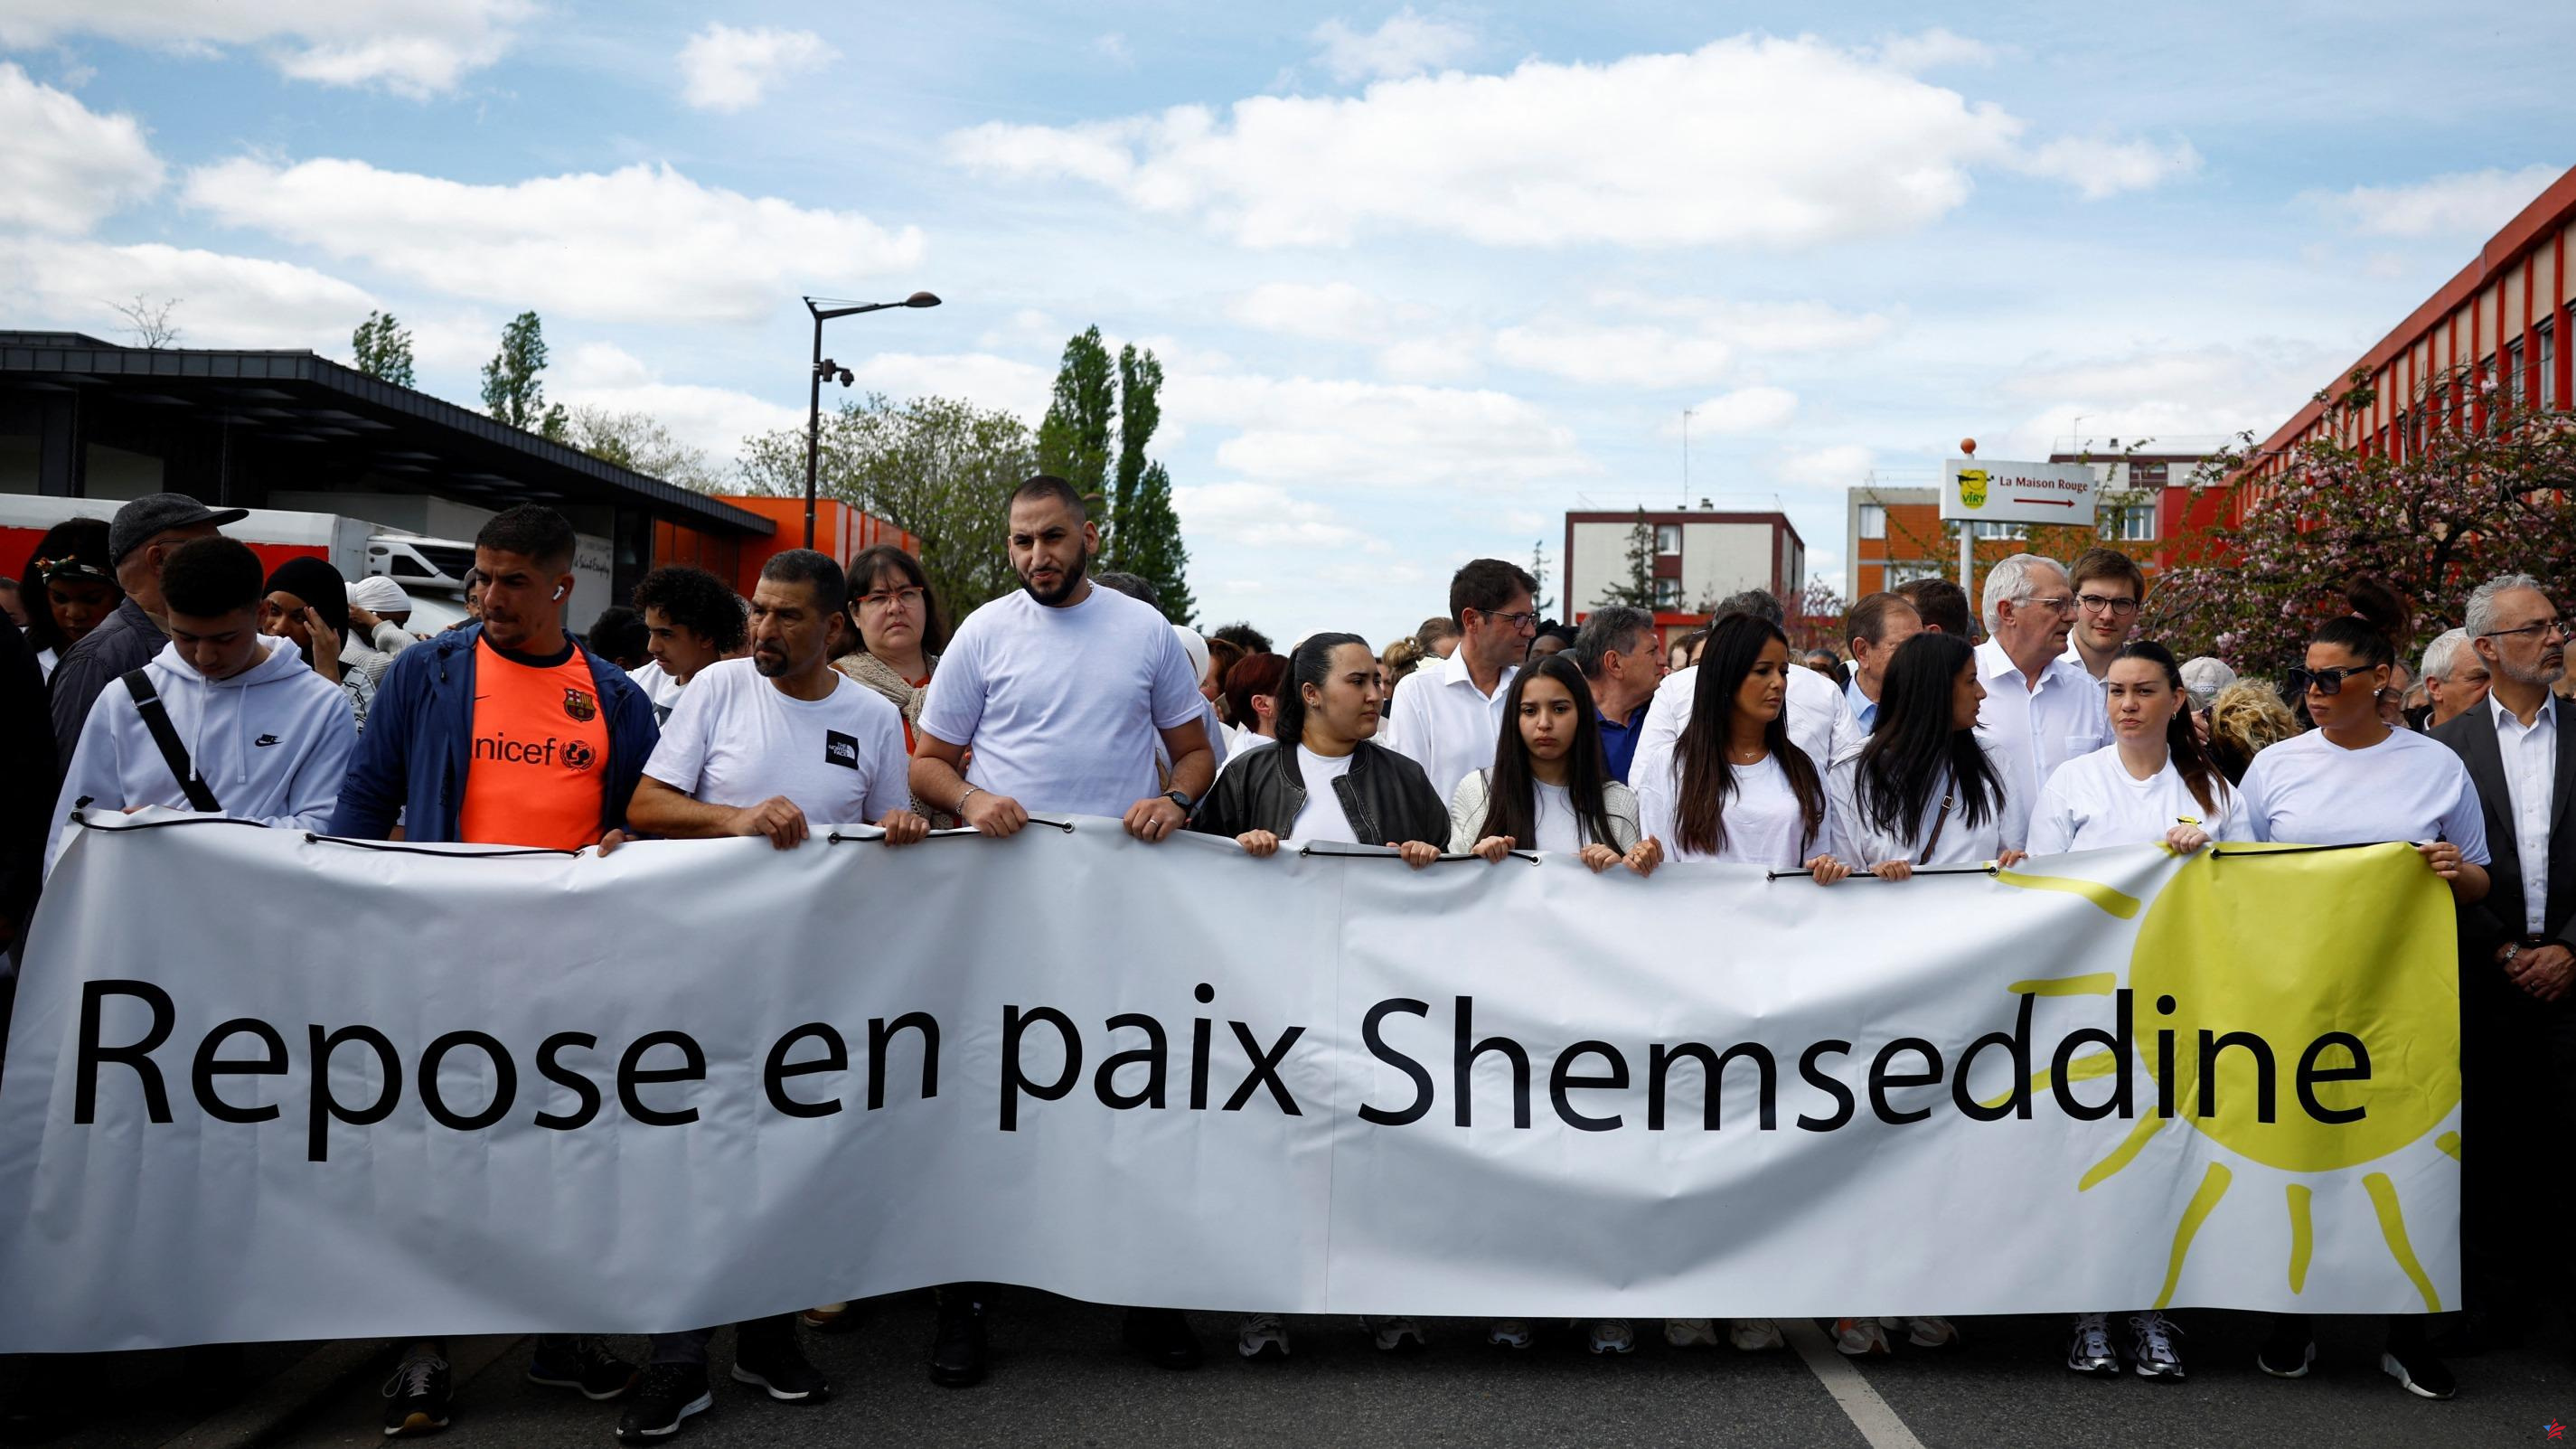 Muerte de Shemseddine en Viry-Châtillon: “¡Ante la violencia en las escuelas, los alcaldes deben poder actuar!”